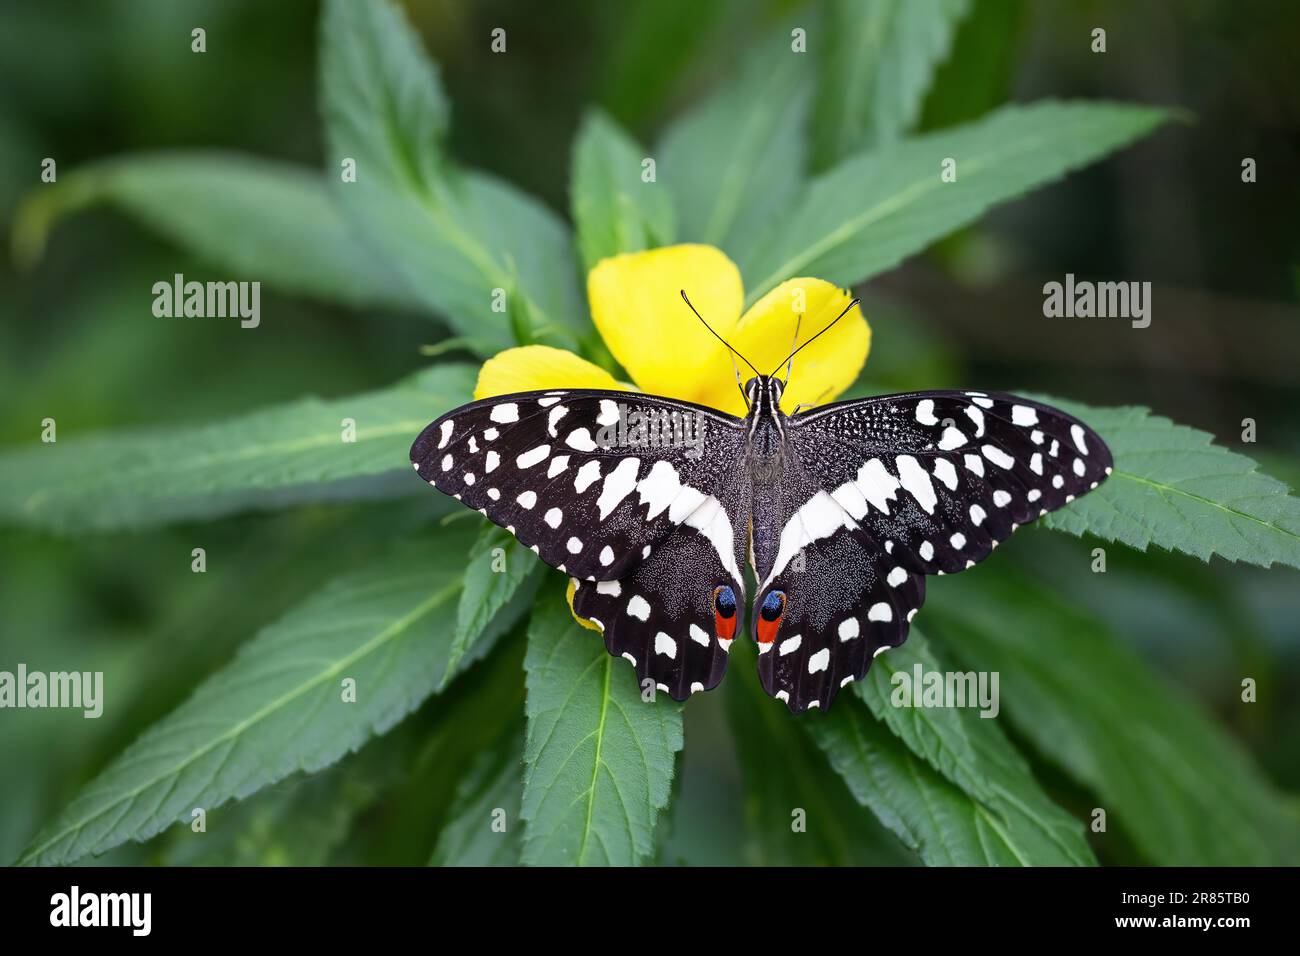 Belle queue de Citrus ou hirondelle de Noël (Papilio demodocus) la queue repose sur la fleur jaune. Horizontalement. Banque D'Images